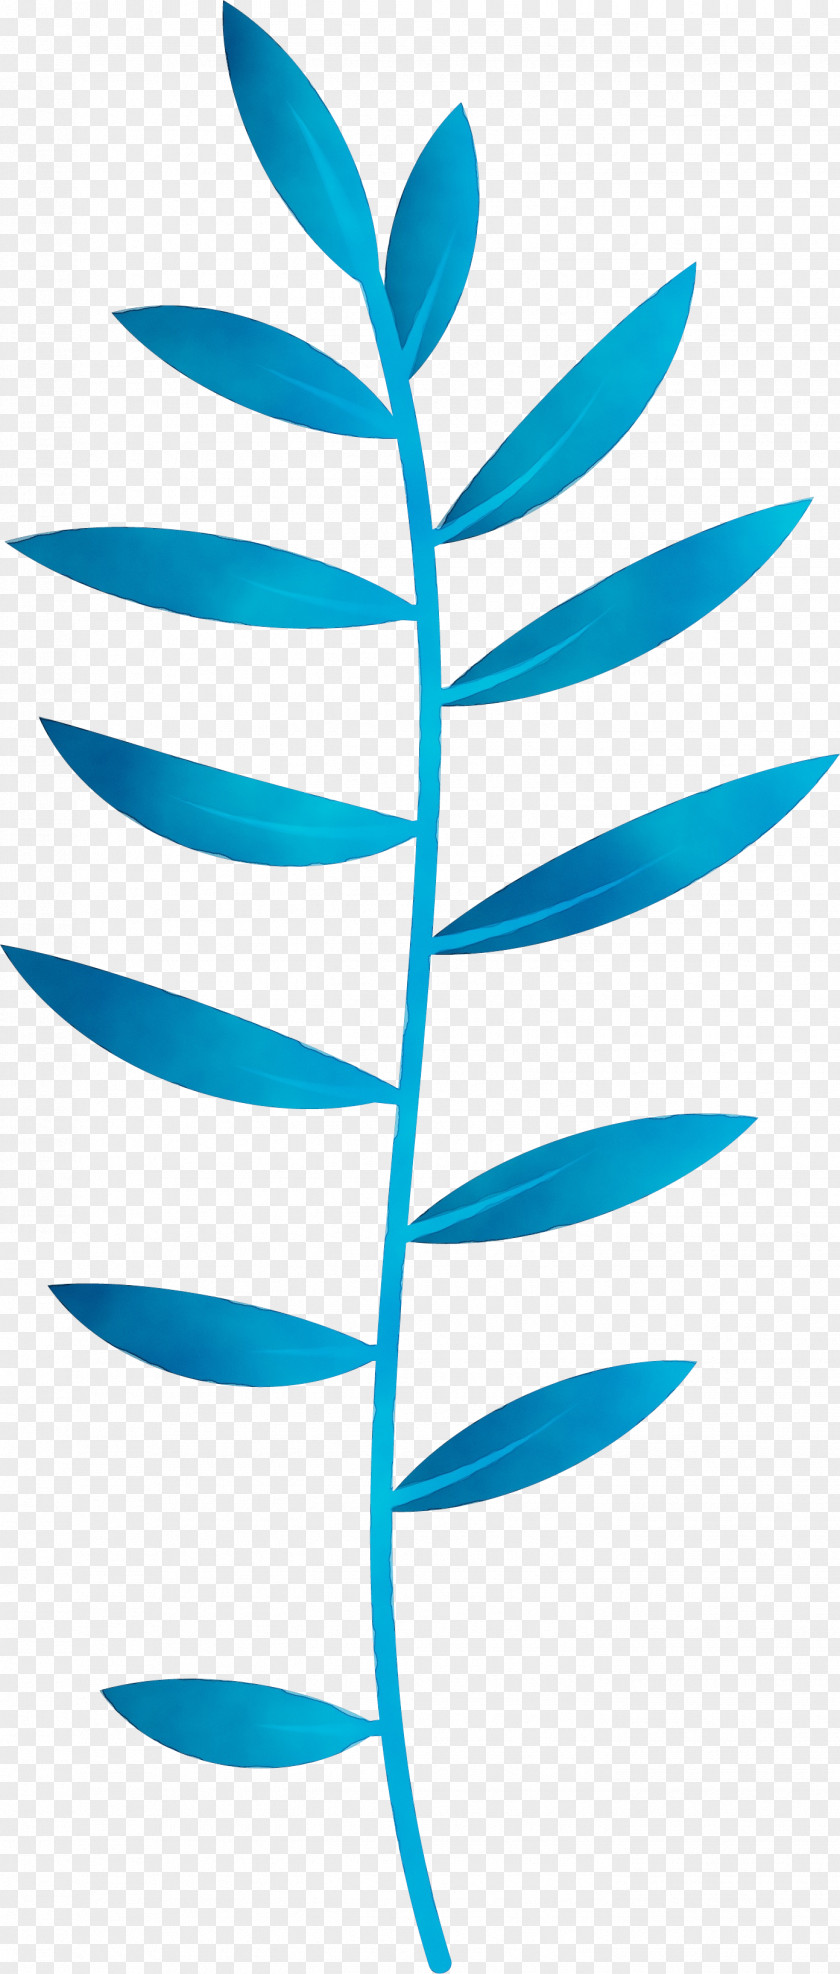 Plant Stem Leaf Angle Line Teal PNG